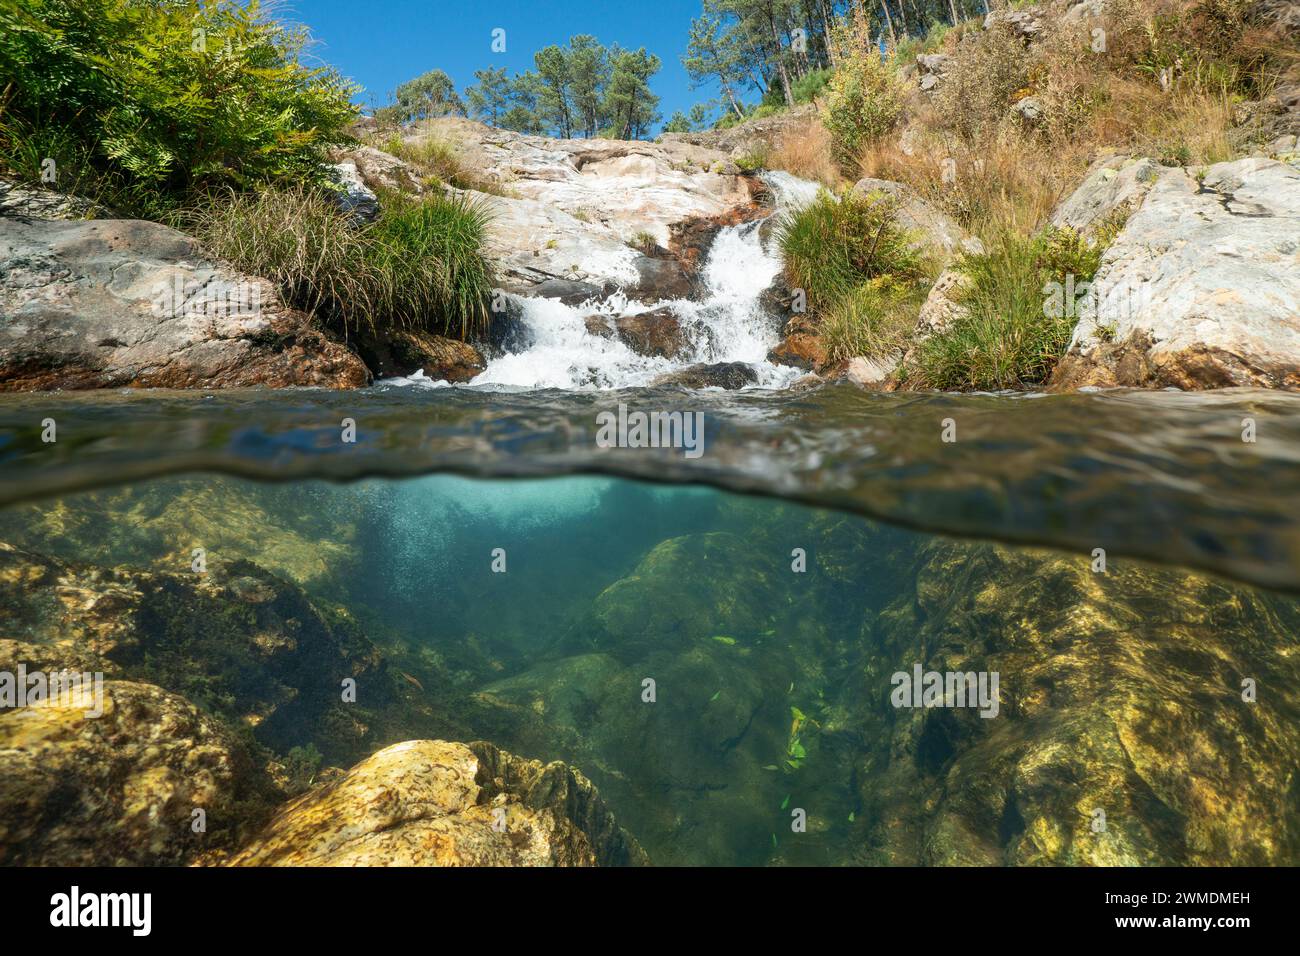 Cascade dans un ruisseau vu de la surface de l'eau, vue divisée à moitié sur et sous l'eau, scène naturelle, Espagne, Galice, province de Pontevedra Banque D'Images